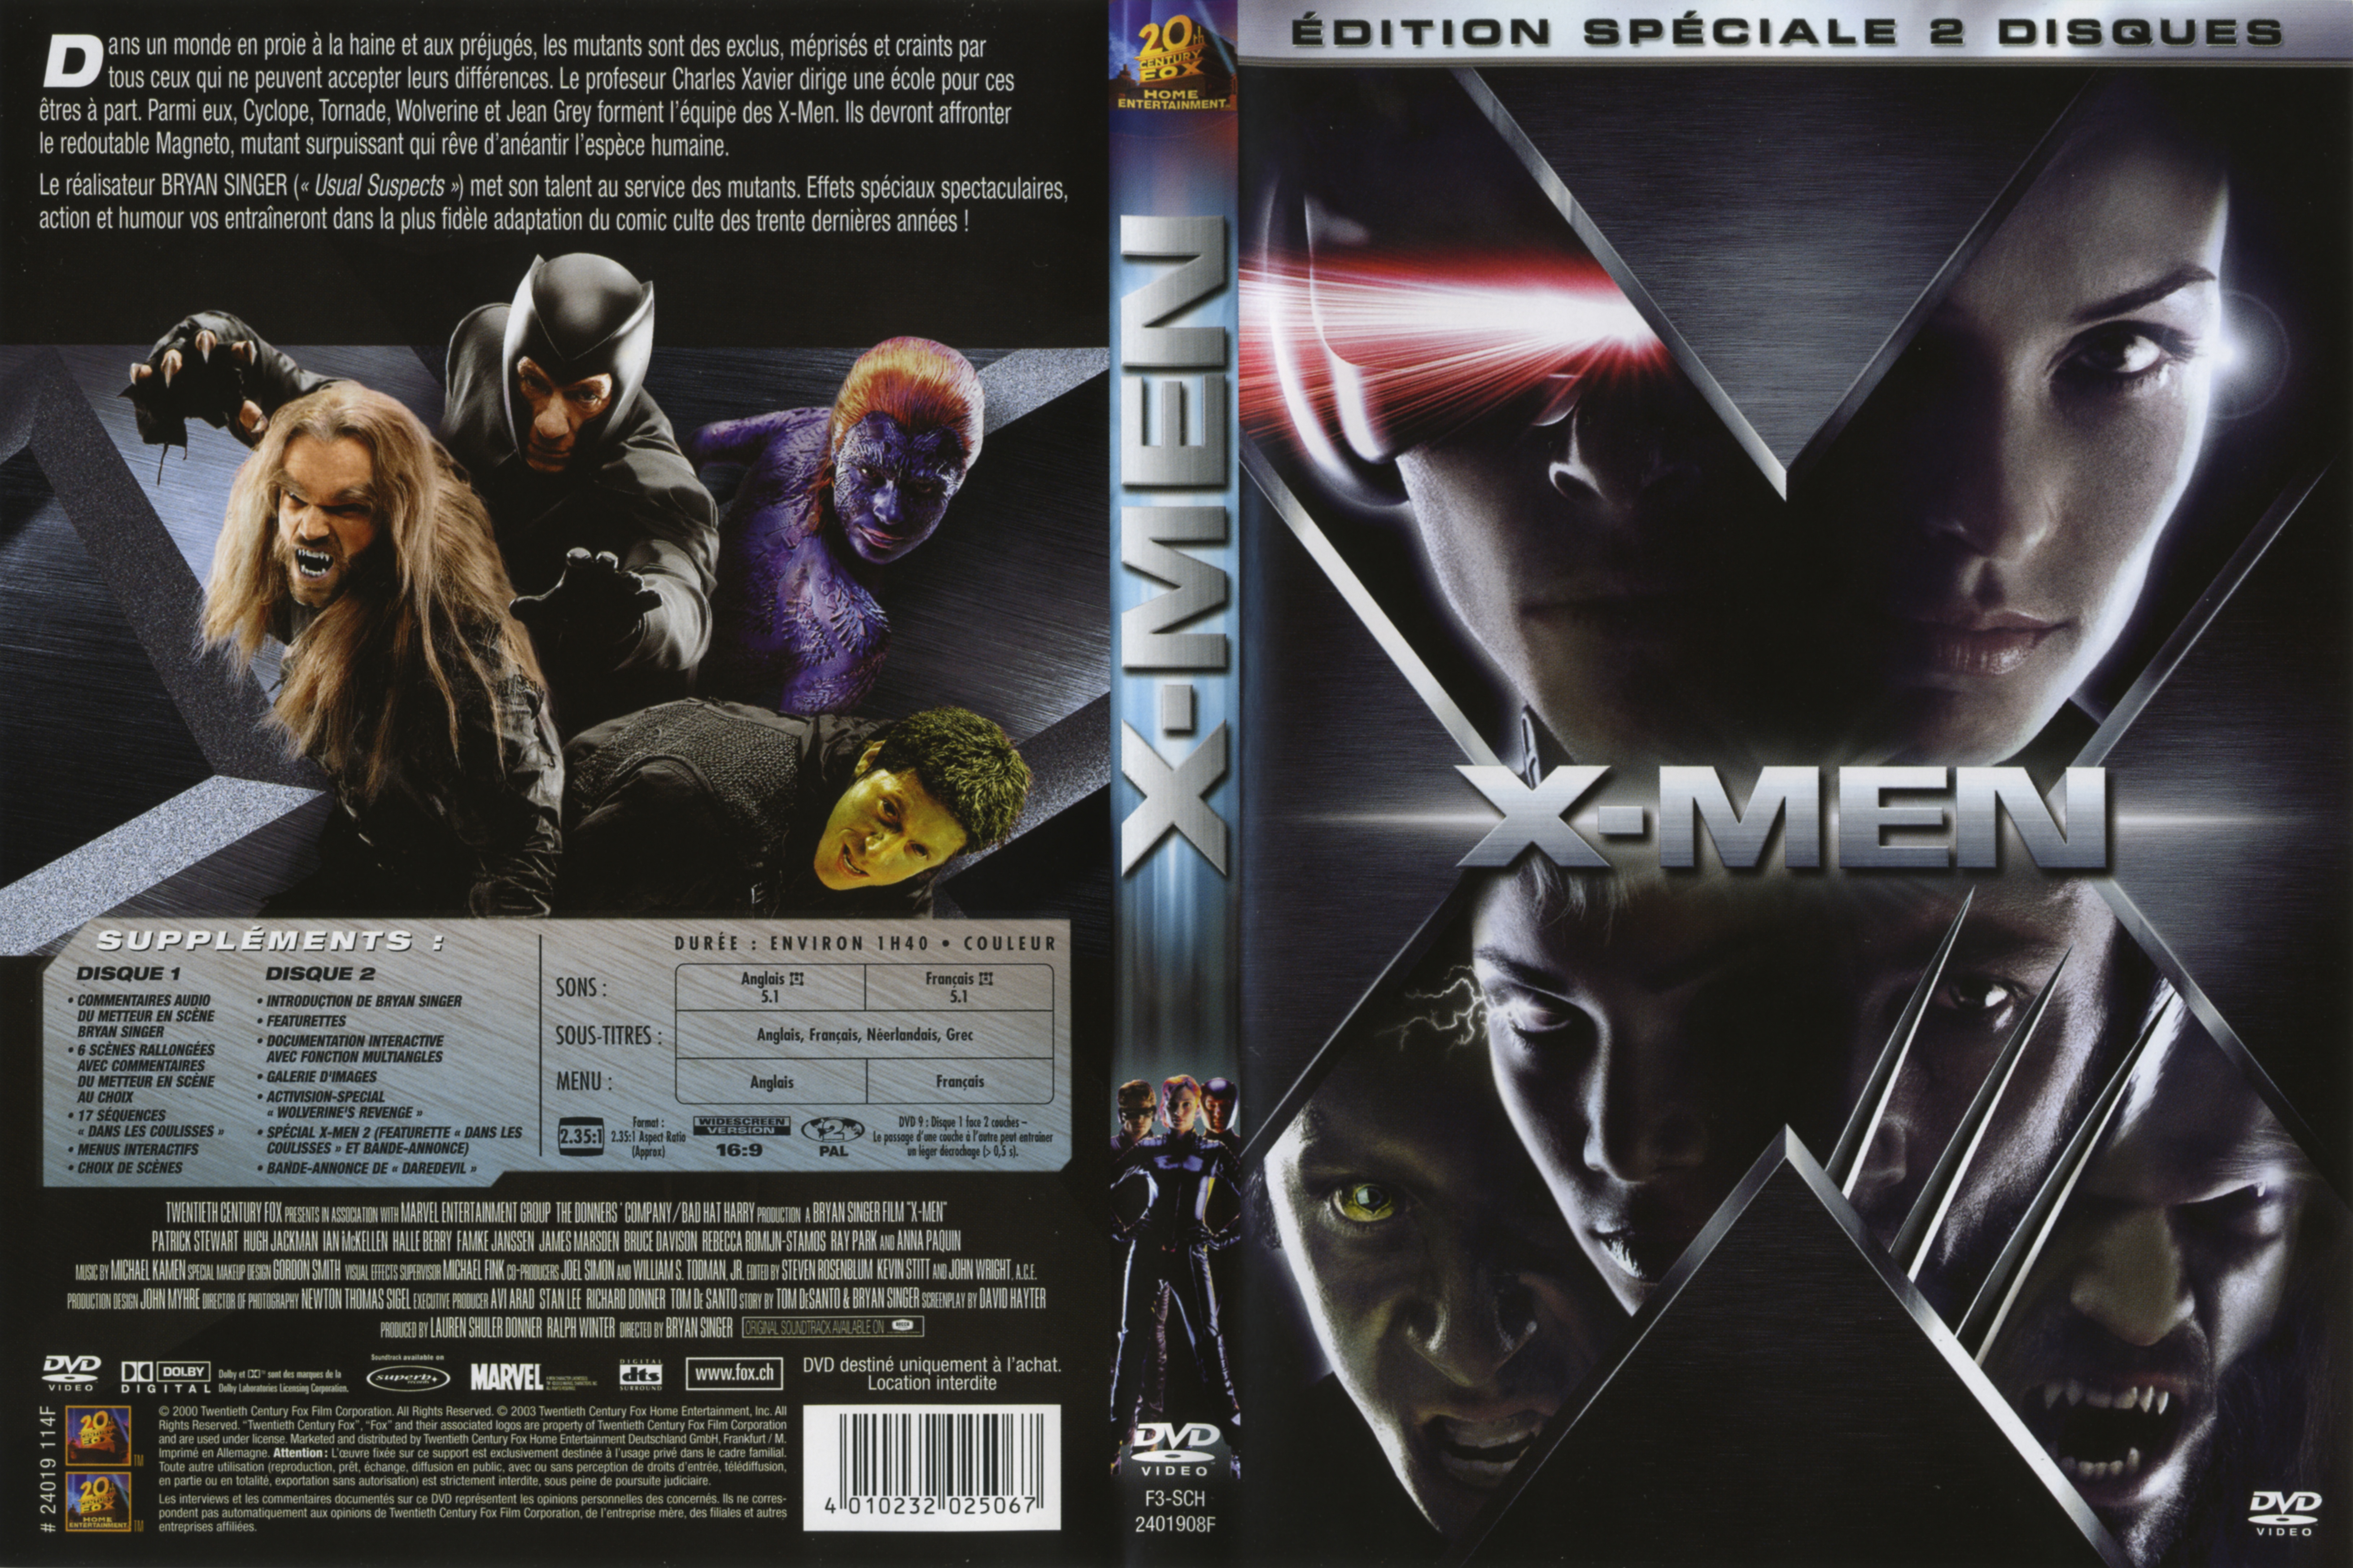 Jaquette DVD X-men v2